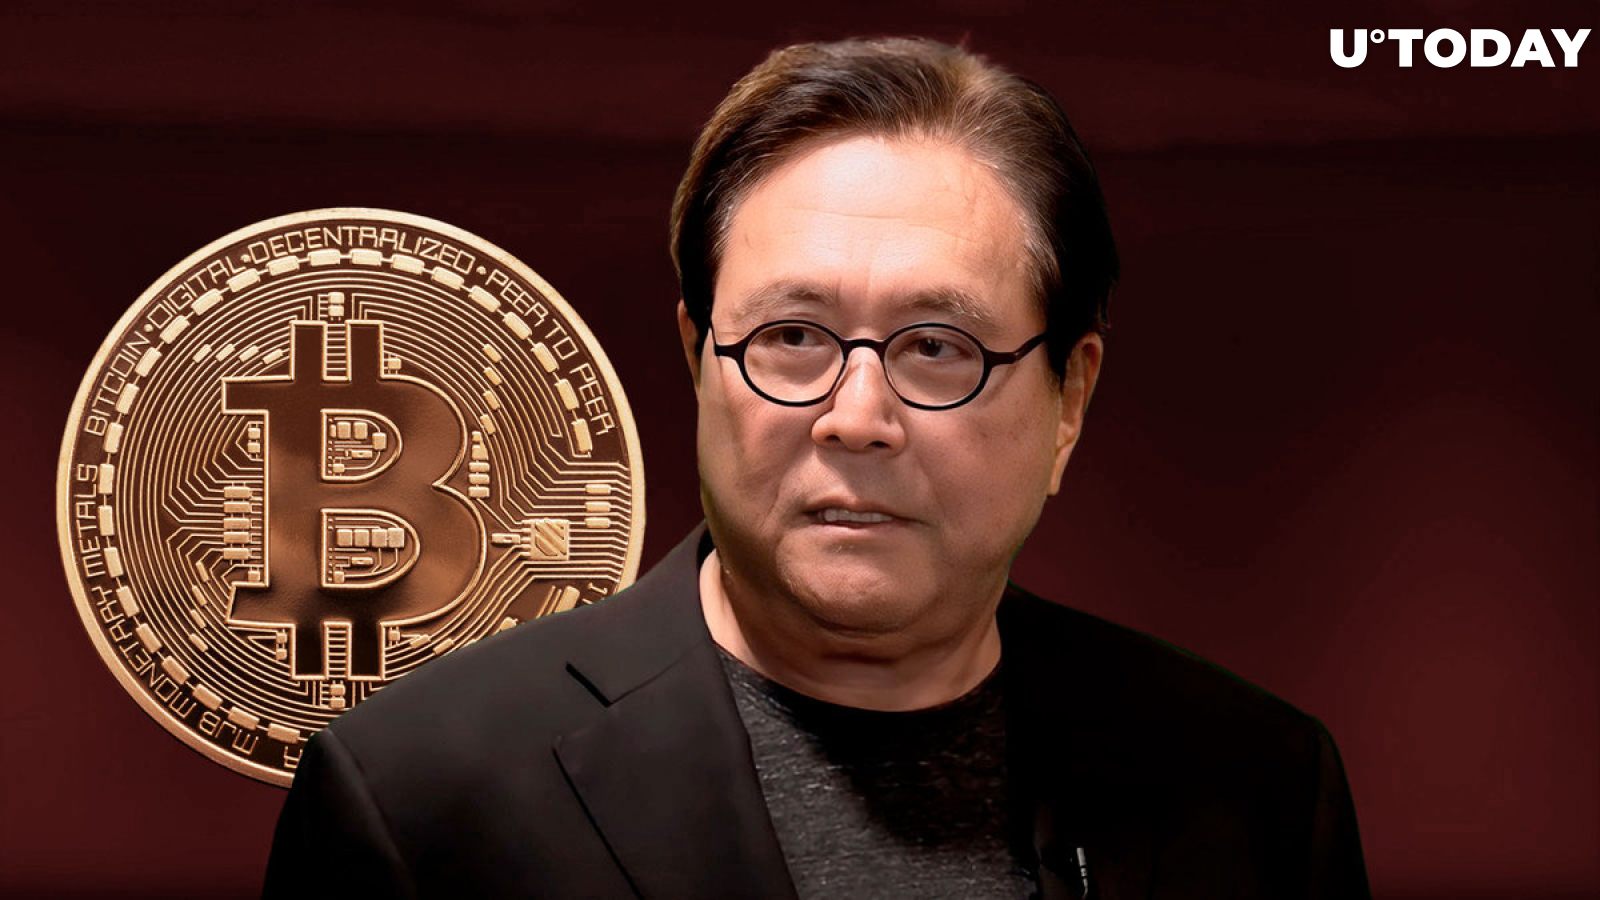 'Rich Dad Poor Dad' Author Kiyosaki Warns: 'Buy Bitcoin Now, Before Market Crash'